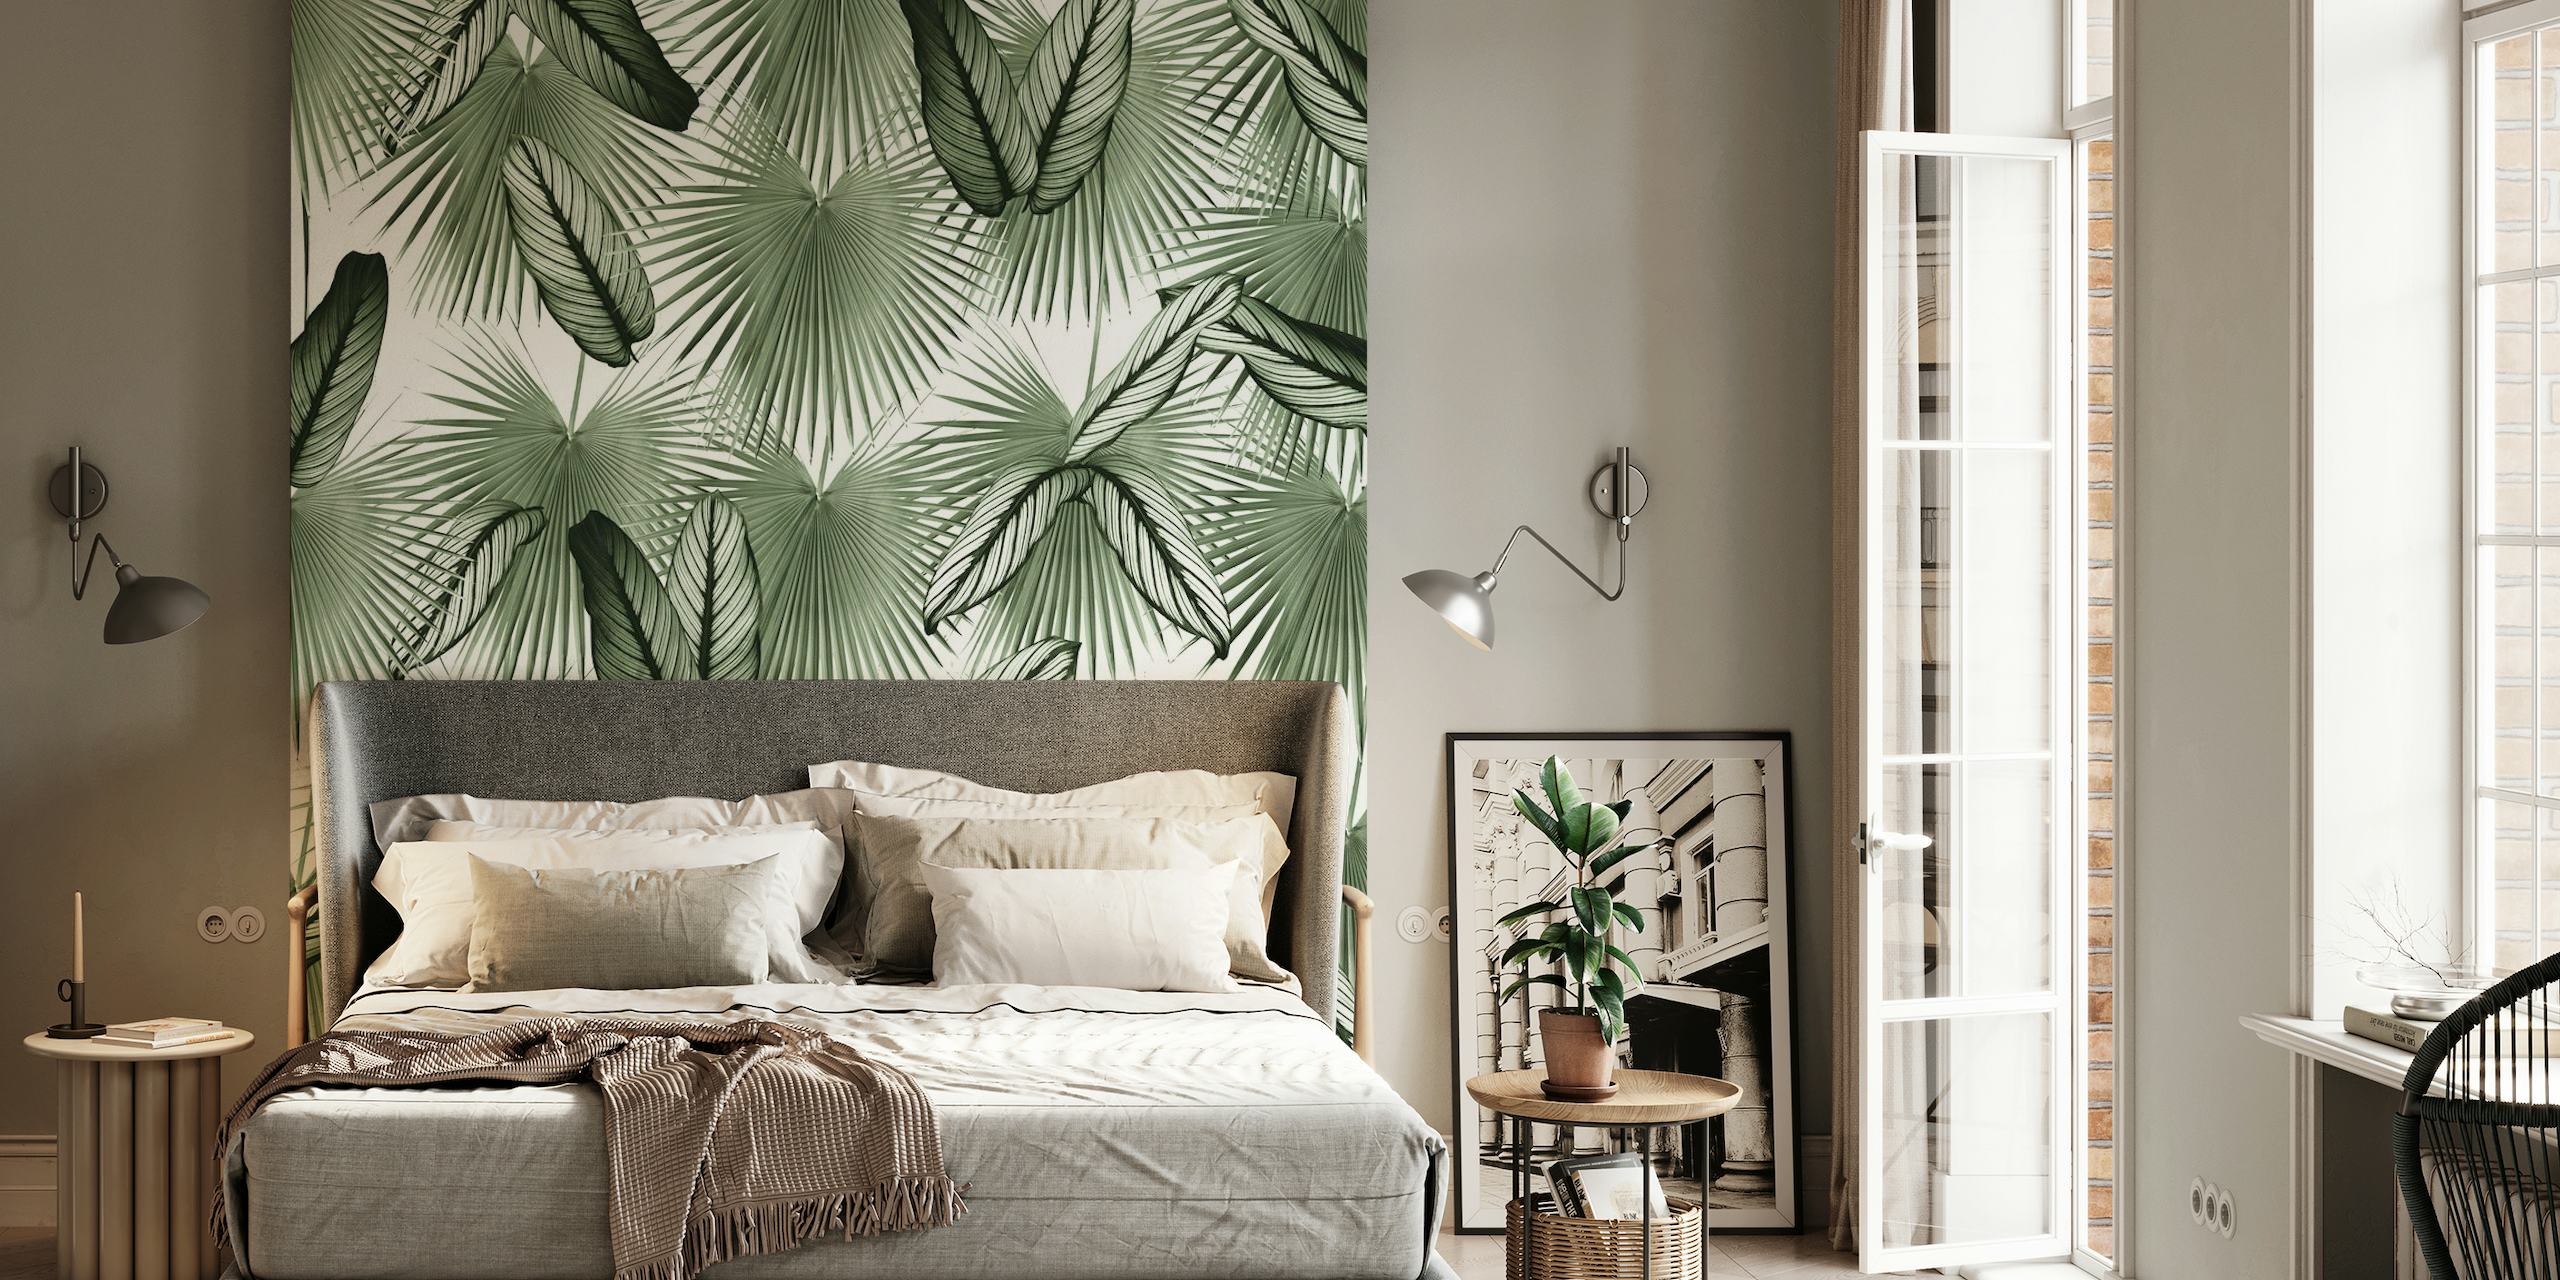 Mural de parede Calathea Fan Palm Leaves mostrando folhagem tropical detalhada em verdes monocromáticos.